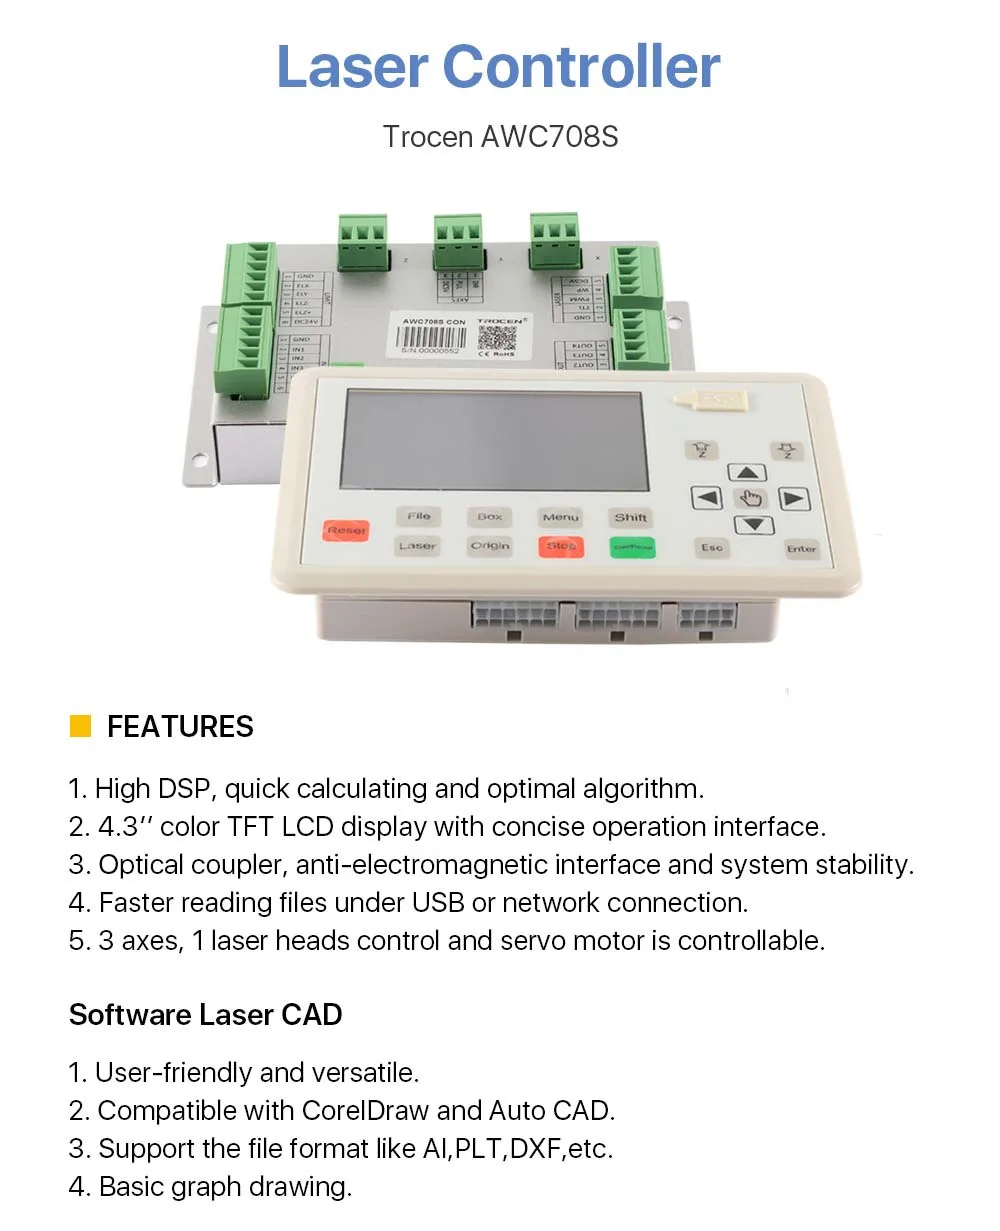 Trocen AWC708S Co2 лазерный контроллер системы для лазерной гравировальная и режущая машина замена AWC708C Lite Ruida Leetro